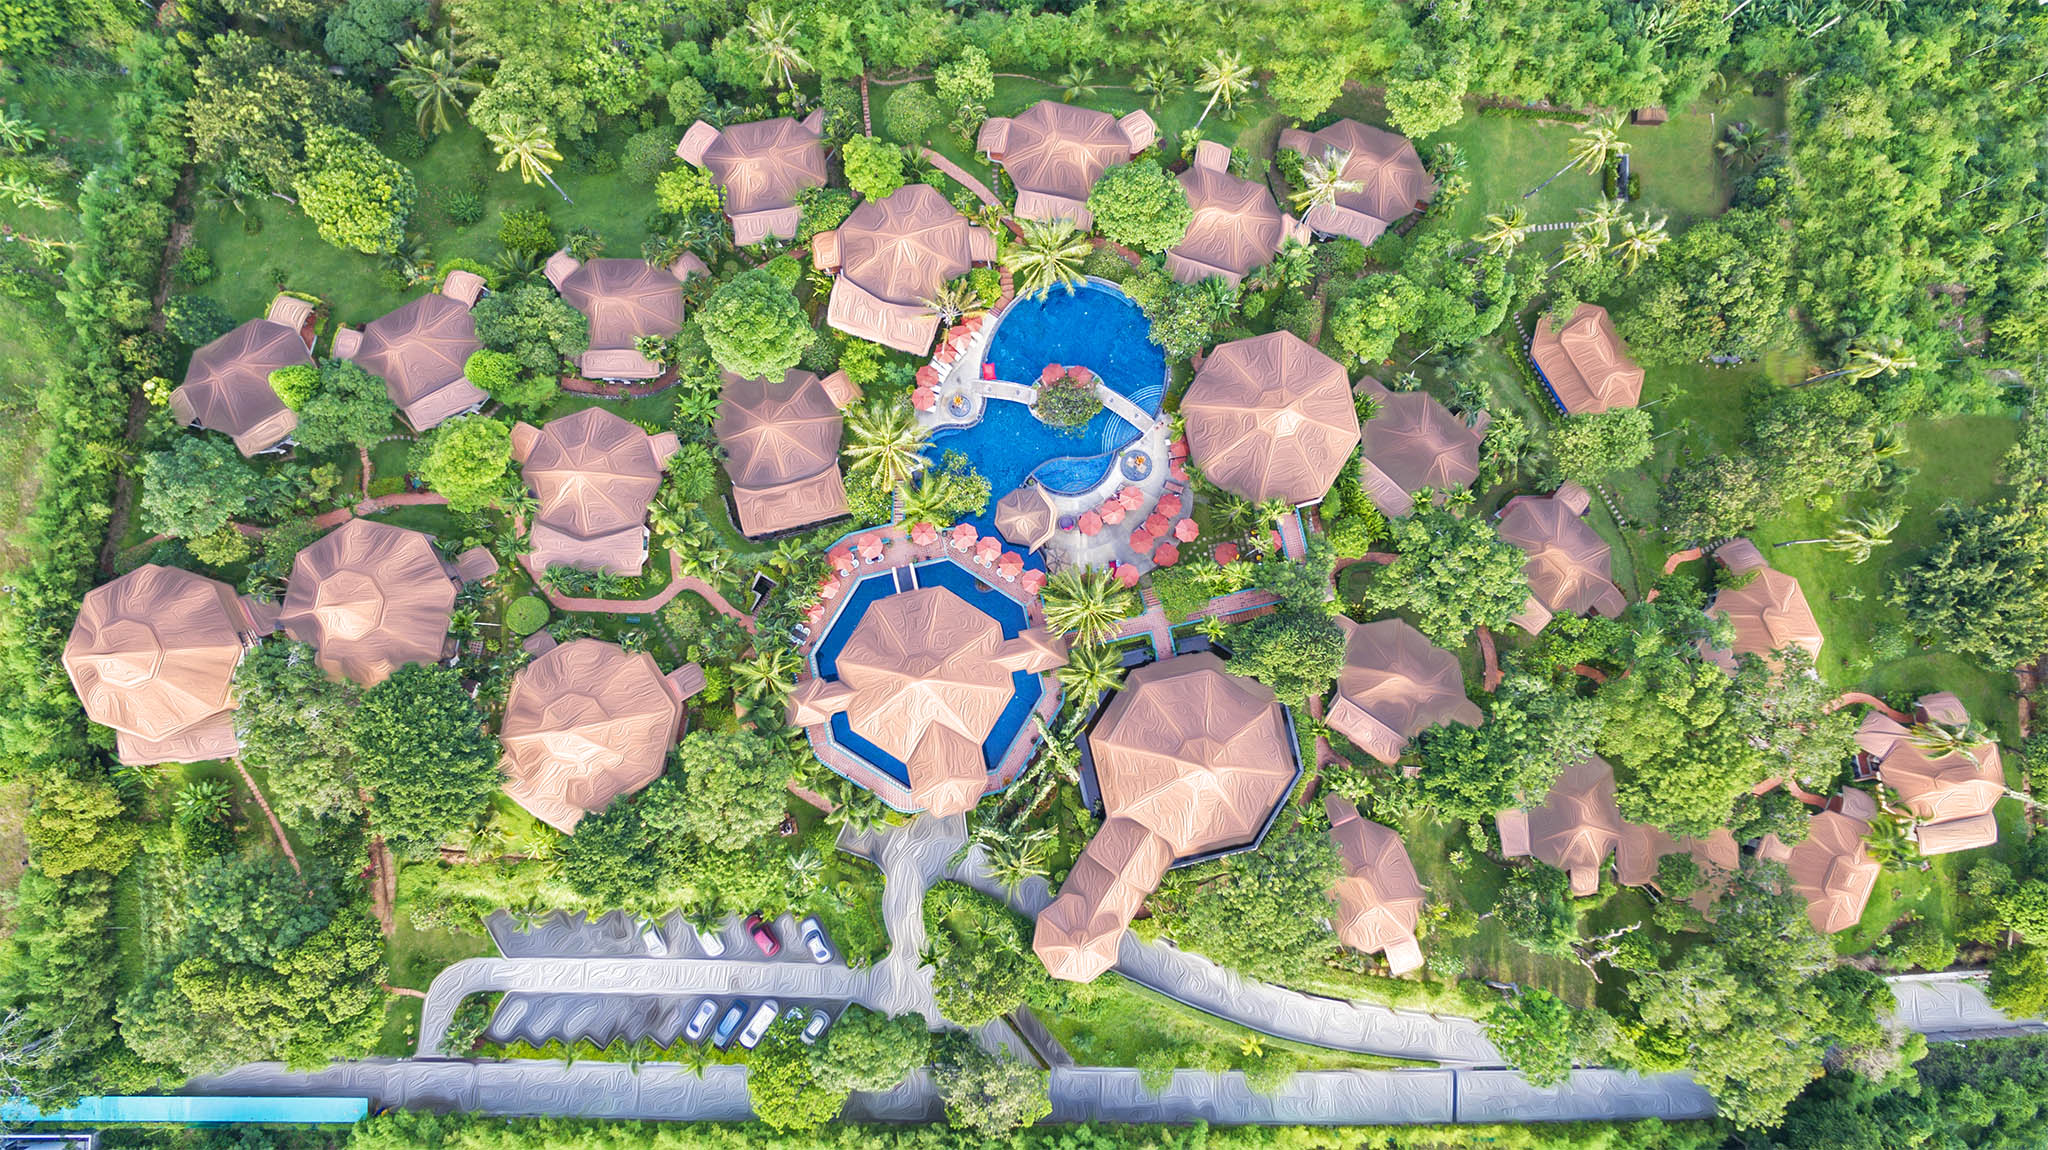 Ayurveda Herbal Garden, Ayurveda, Wellness, Yoga Retreats, Phuket Thailand, Mangosteen Ayurveda & Wellness Resort, Number 1 Ayurveda Resort In Thailand, Rawai, Phuket.